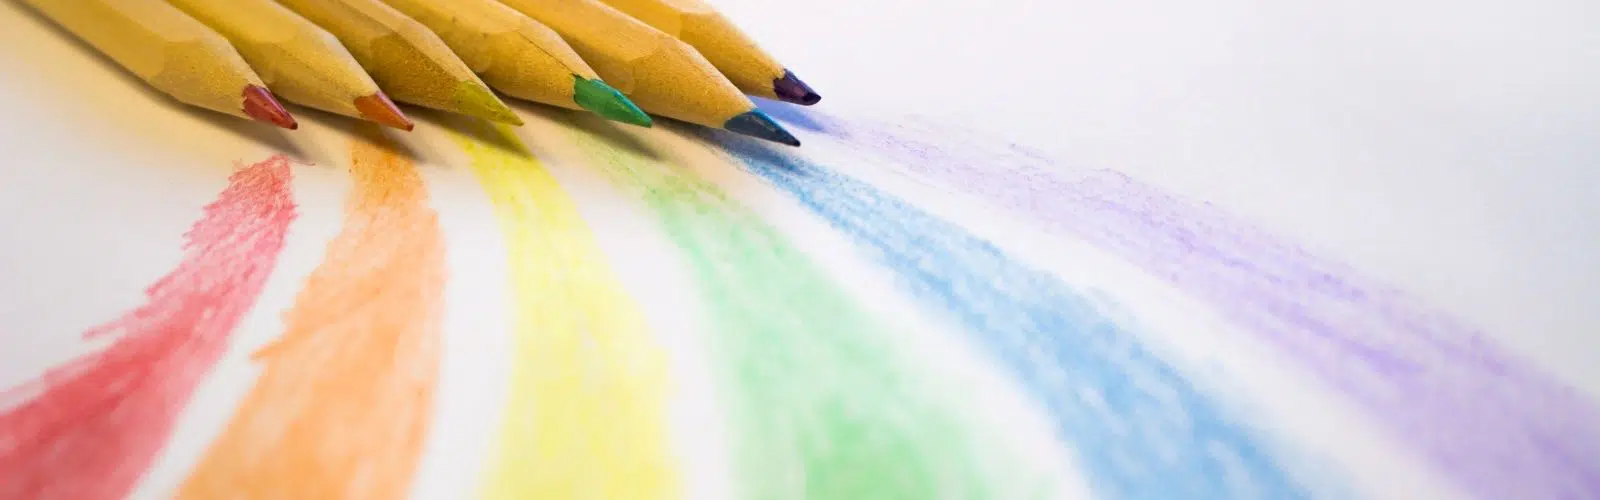 Apprendre les couleurs : 4 activités pour apprendre les couleurs primaires aux enfants